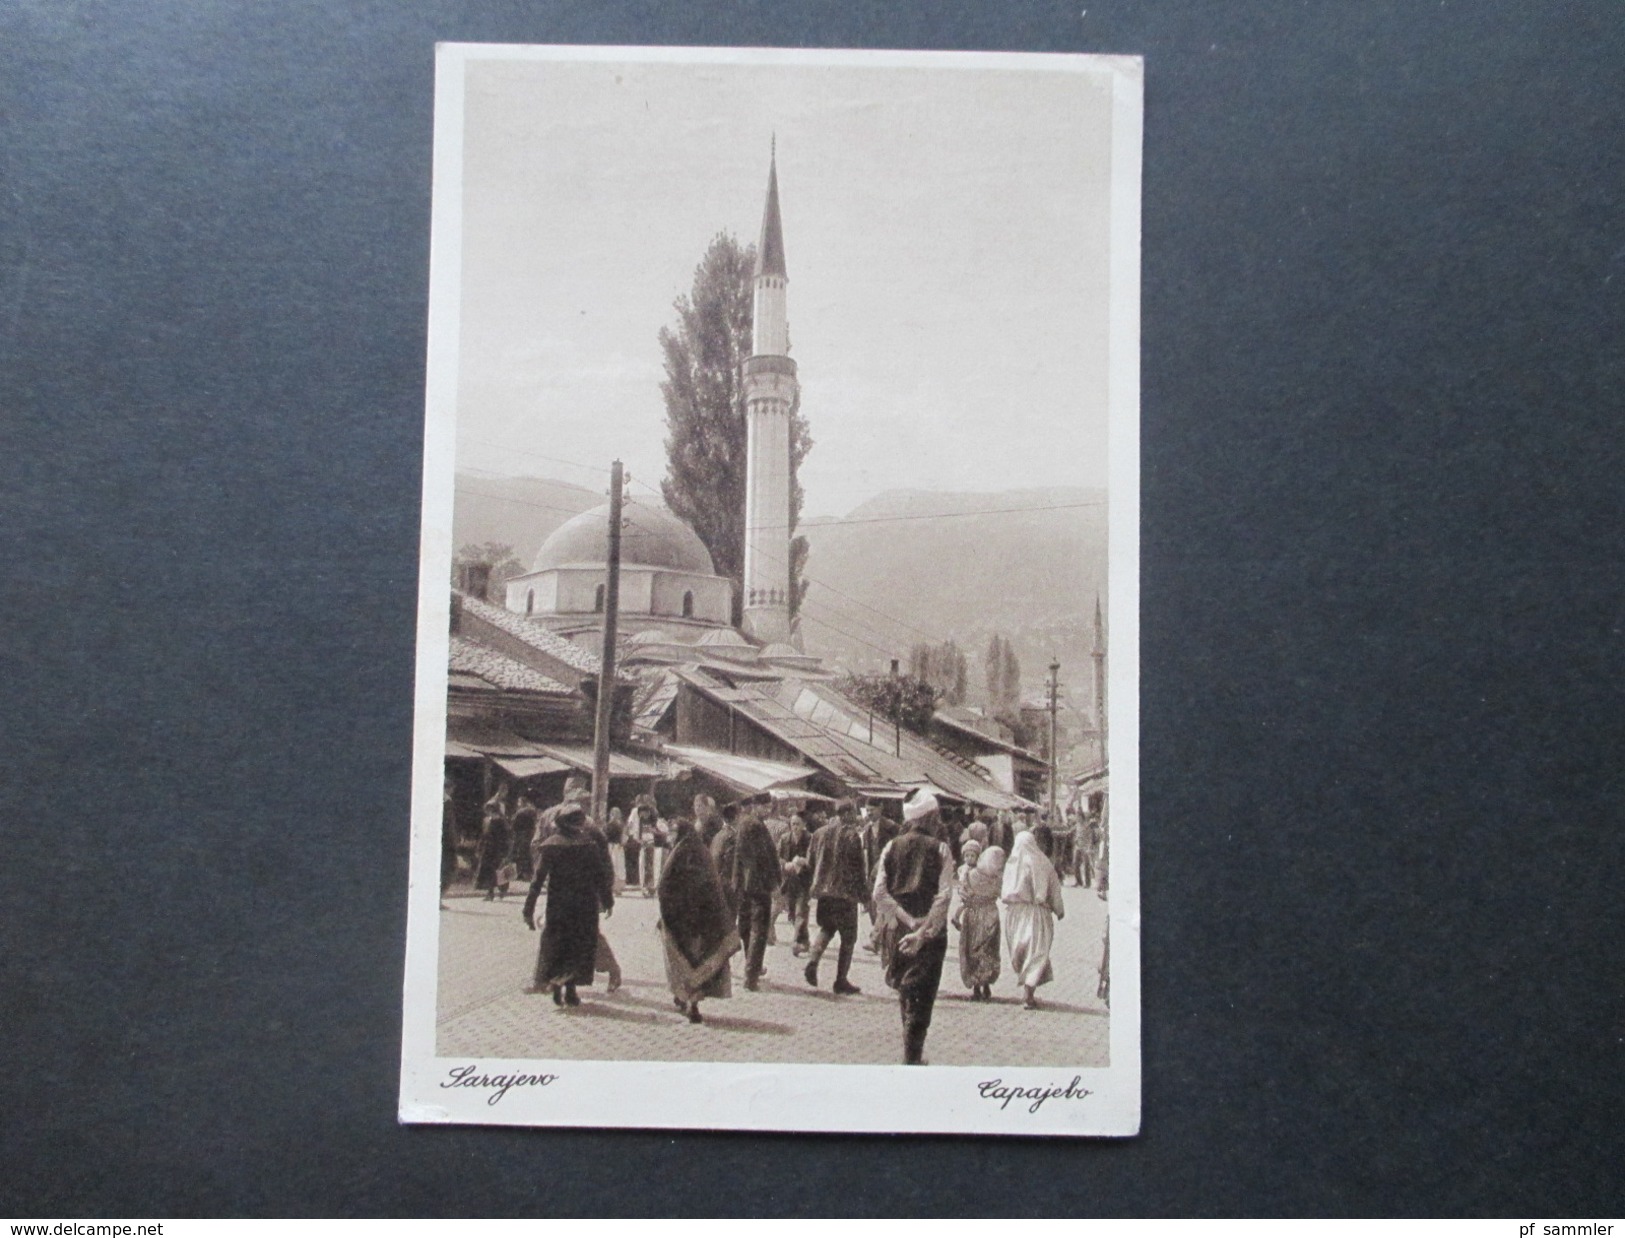 AK 1929 Bosnien / SHS. Dapajebo / Sarajewo. Einheimische / Moschee / Kirche. An Prof. Dr. Carl Patsch. Social Philately - Bosnië En Herzegovina